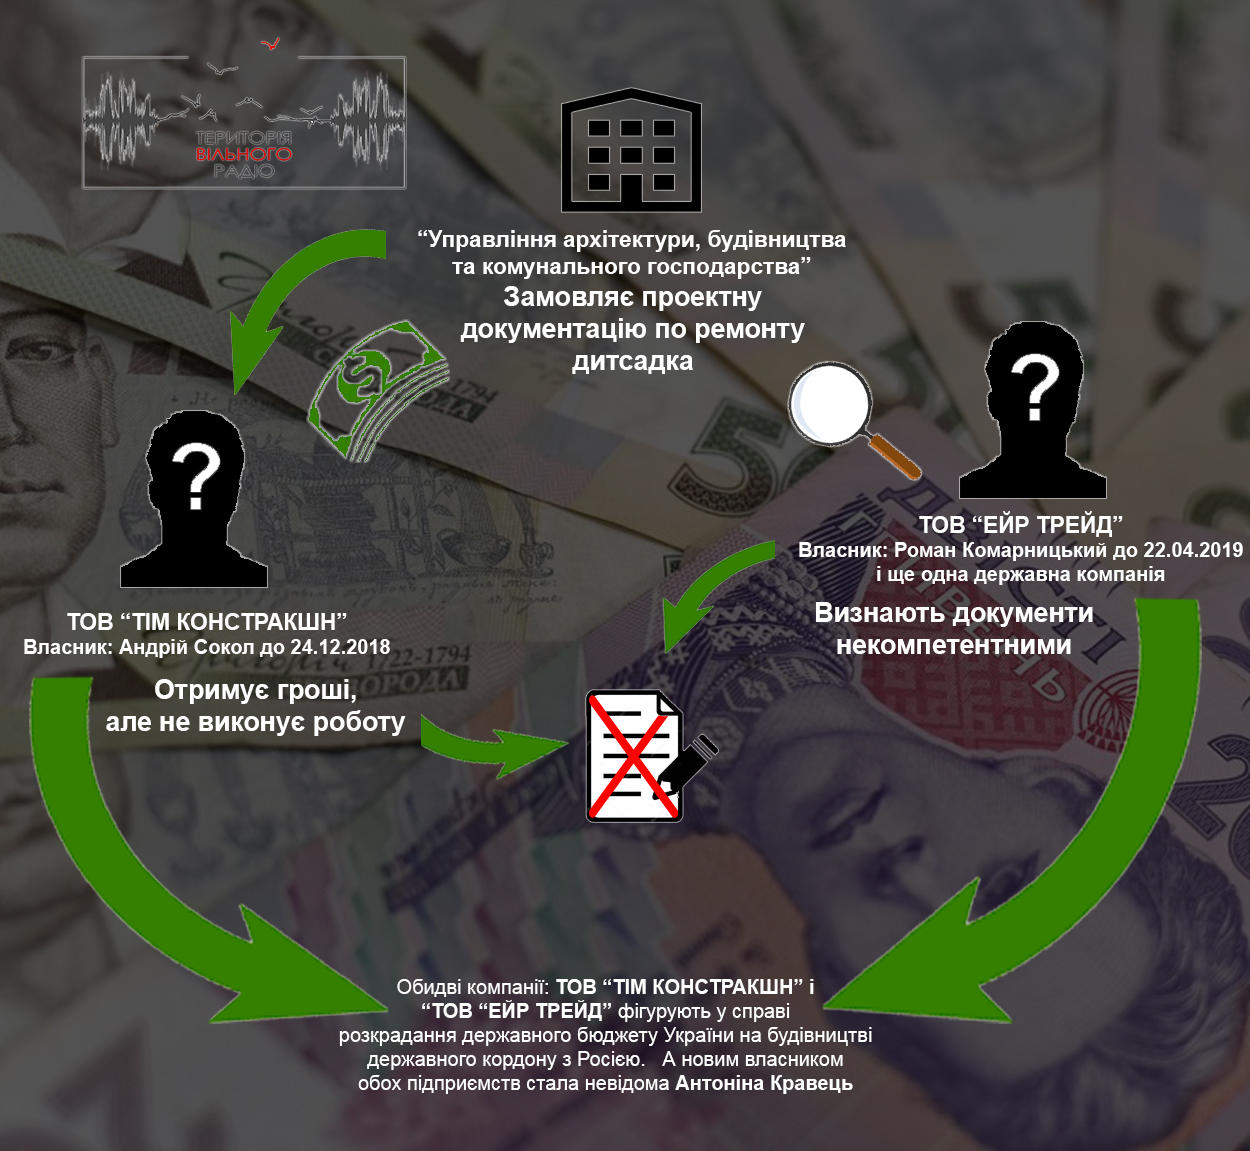 КП з Донеччини віддало тендер фірмі, яку підозрюють в розкраданнях, і втратило гроші